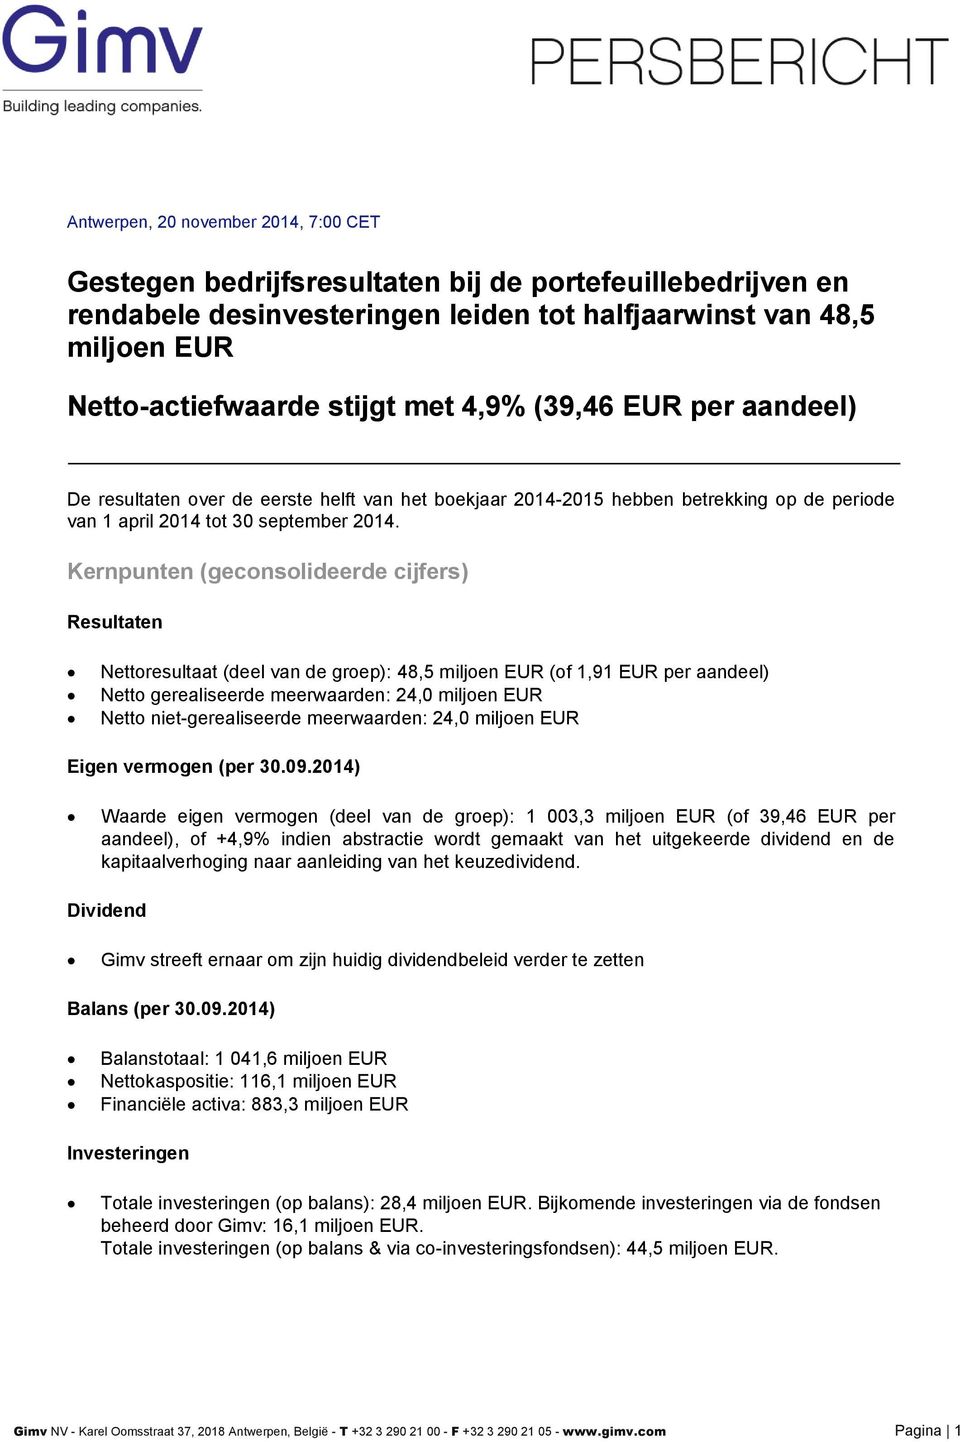 Kernpunten (geconsolideerde cijfers) Resultaten Nettoresultaat (deel van de groep): 48,5 miljoen EUR (of 1,91 EUR per aandeel) Netto gerealiseerde meerwaarden: 24,0 miljoen EUR Netto